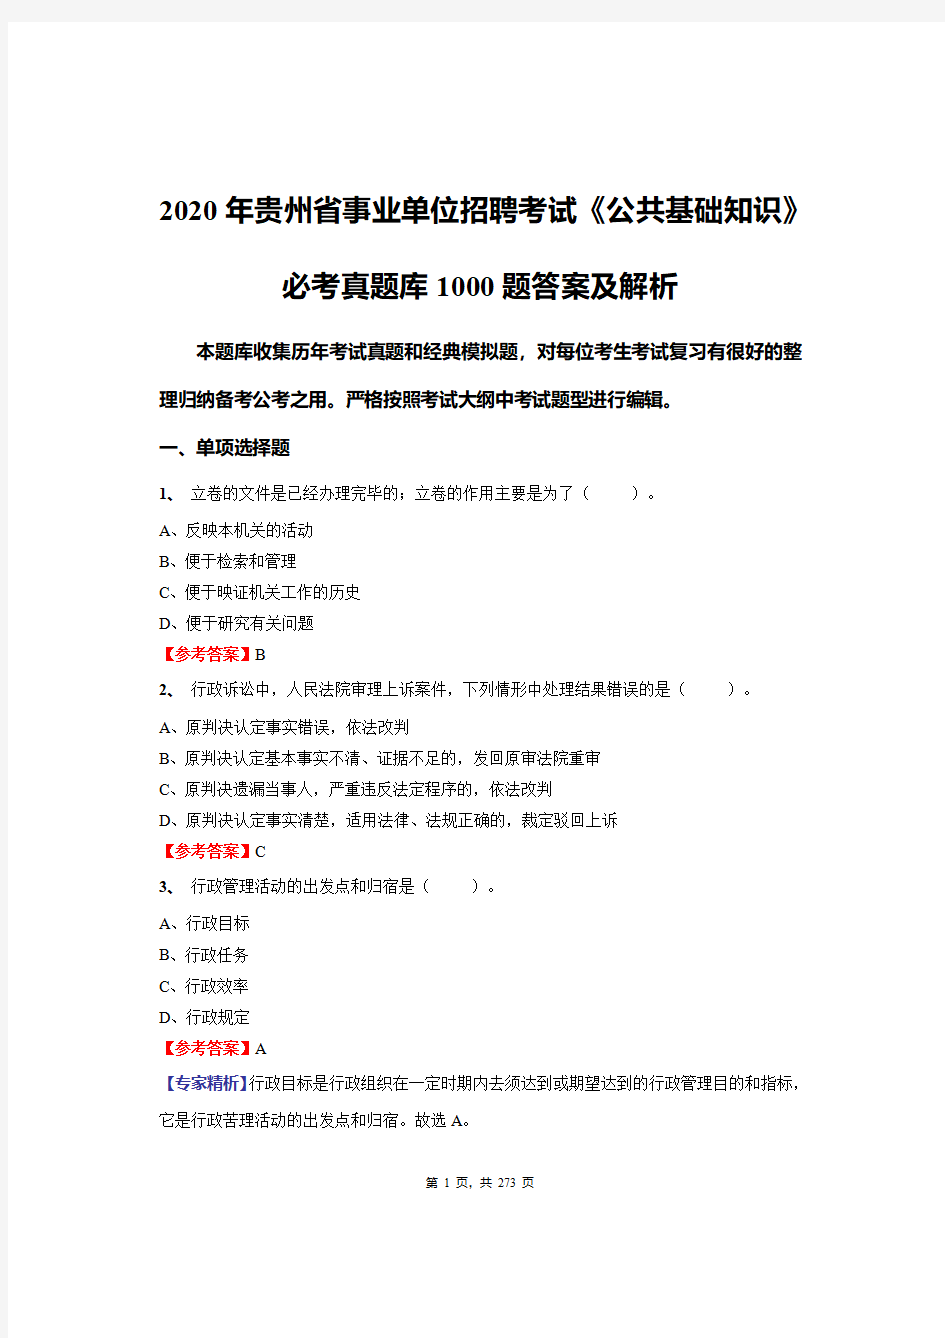 2020年贵州省事业单位招聘考试《公共基础知识》必做真题库1000题答案及解析